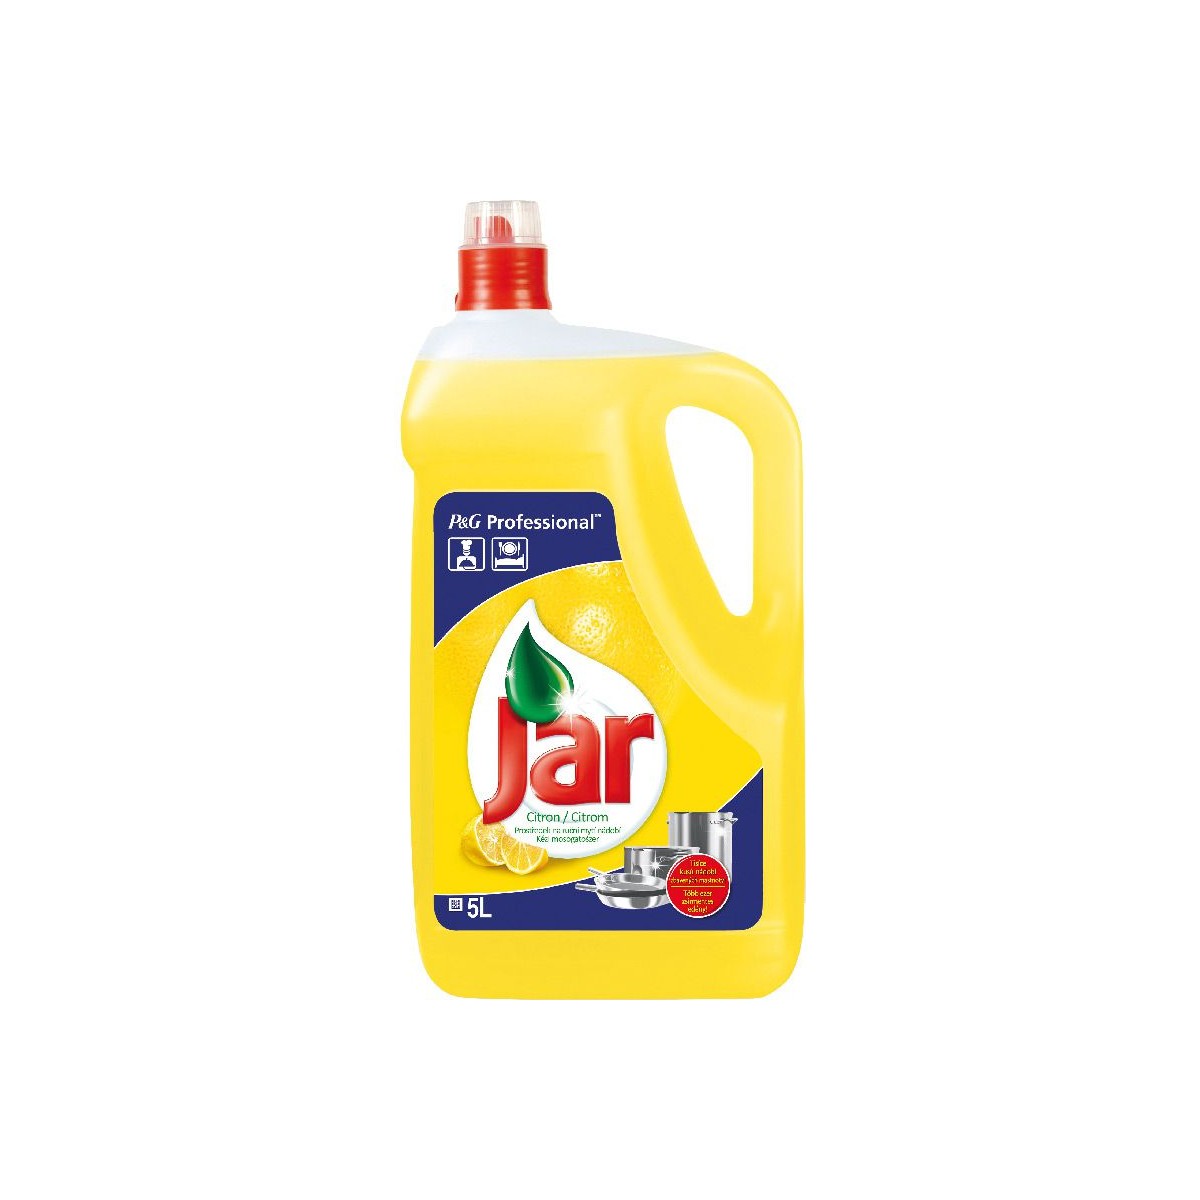 Jar citron 5l